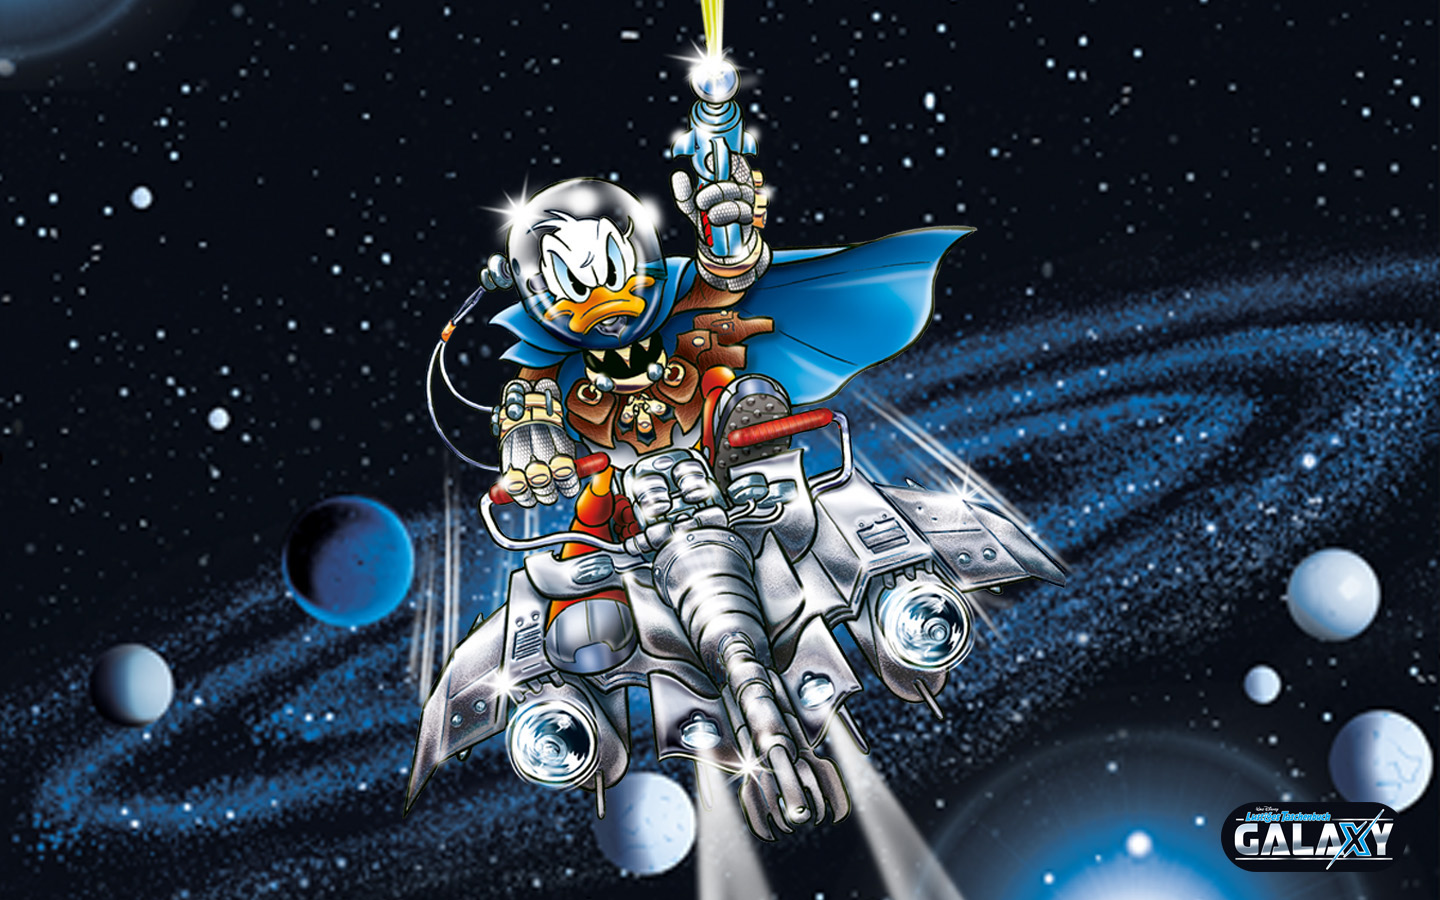 Wallpaper Donald auf dem Raumflugzeug, LTB Galaxy